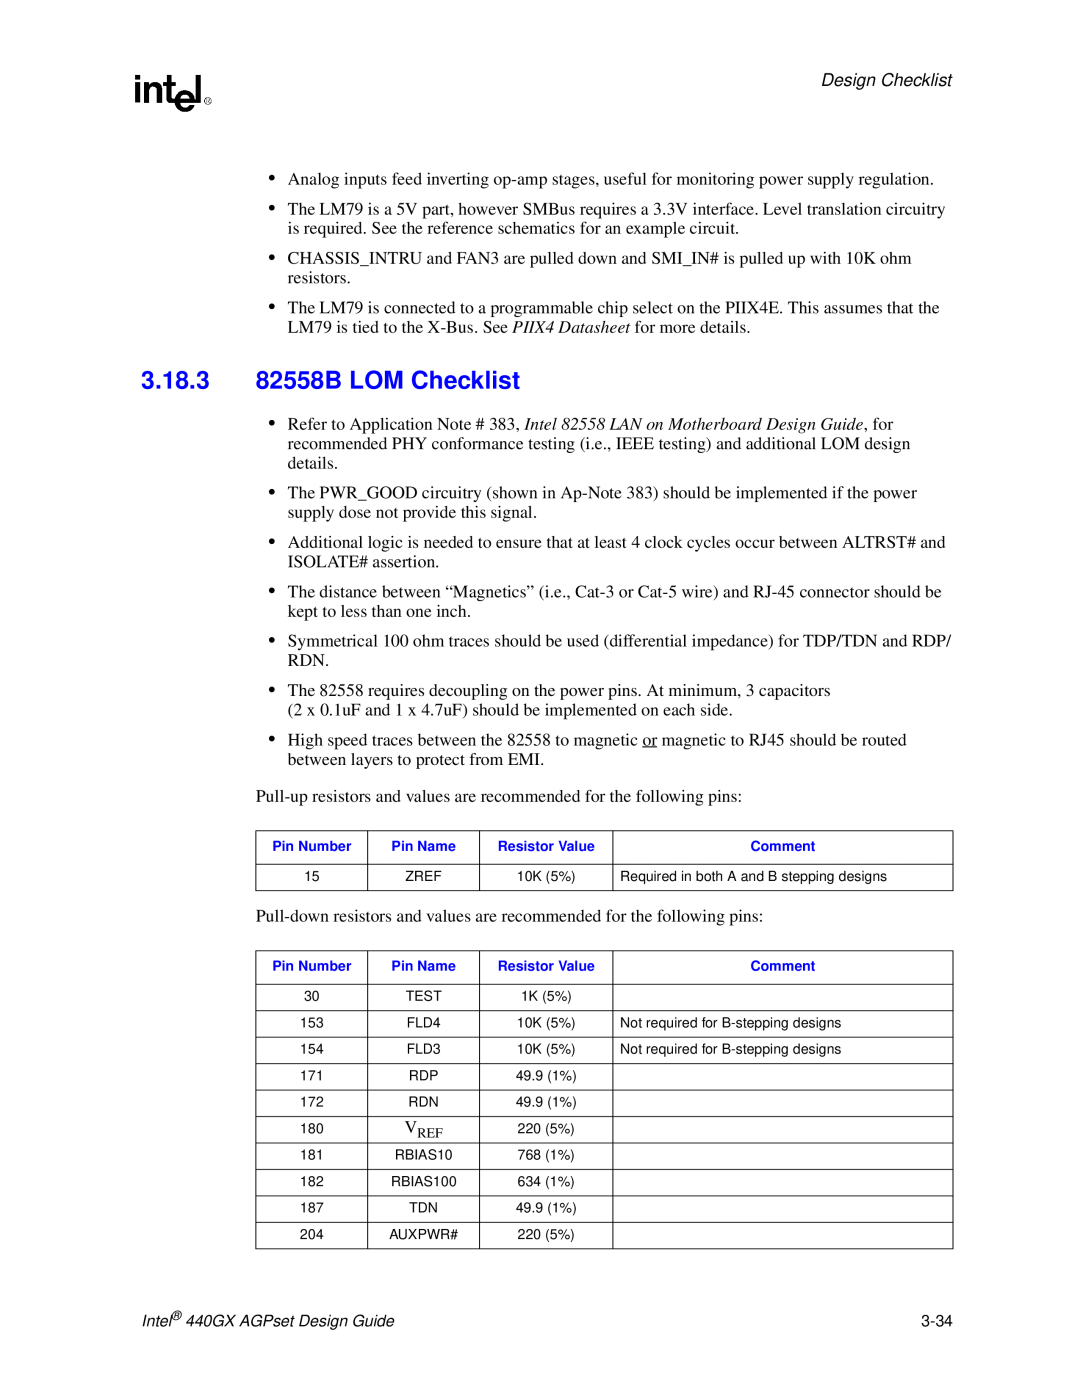 Intel 440GX manual 3.18.3 82558B LOM Checklist, Design Checklist 